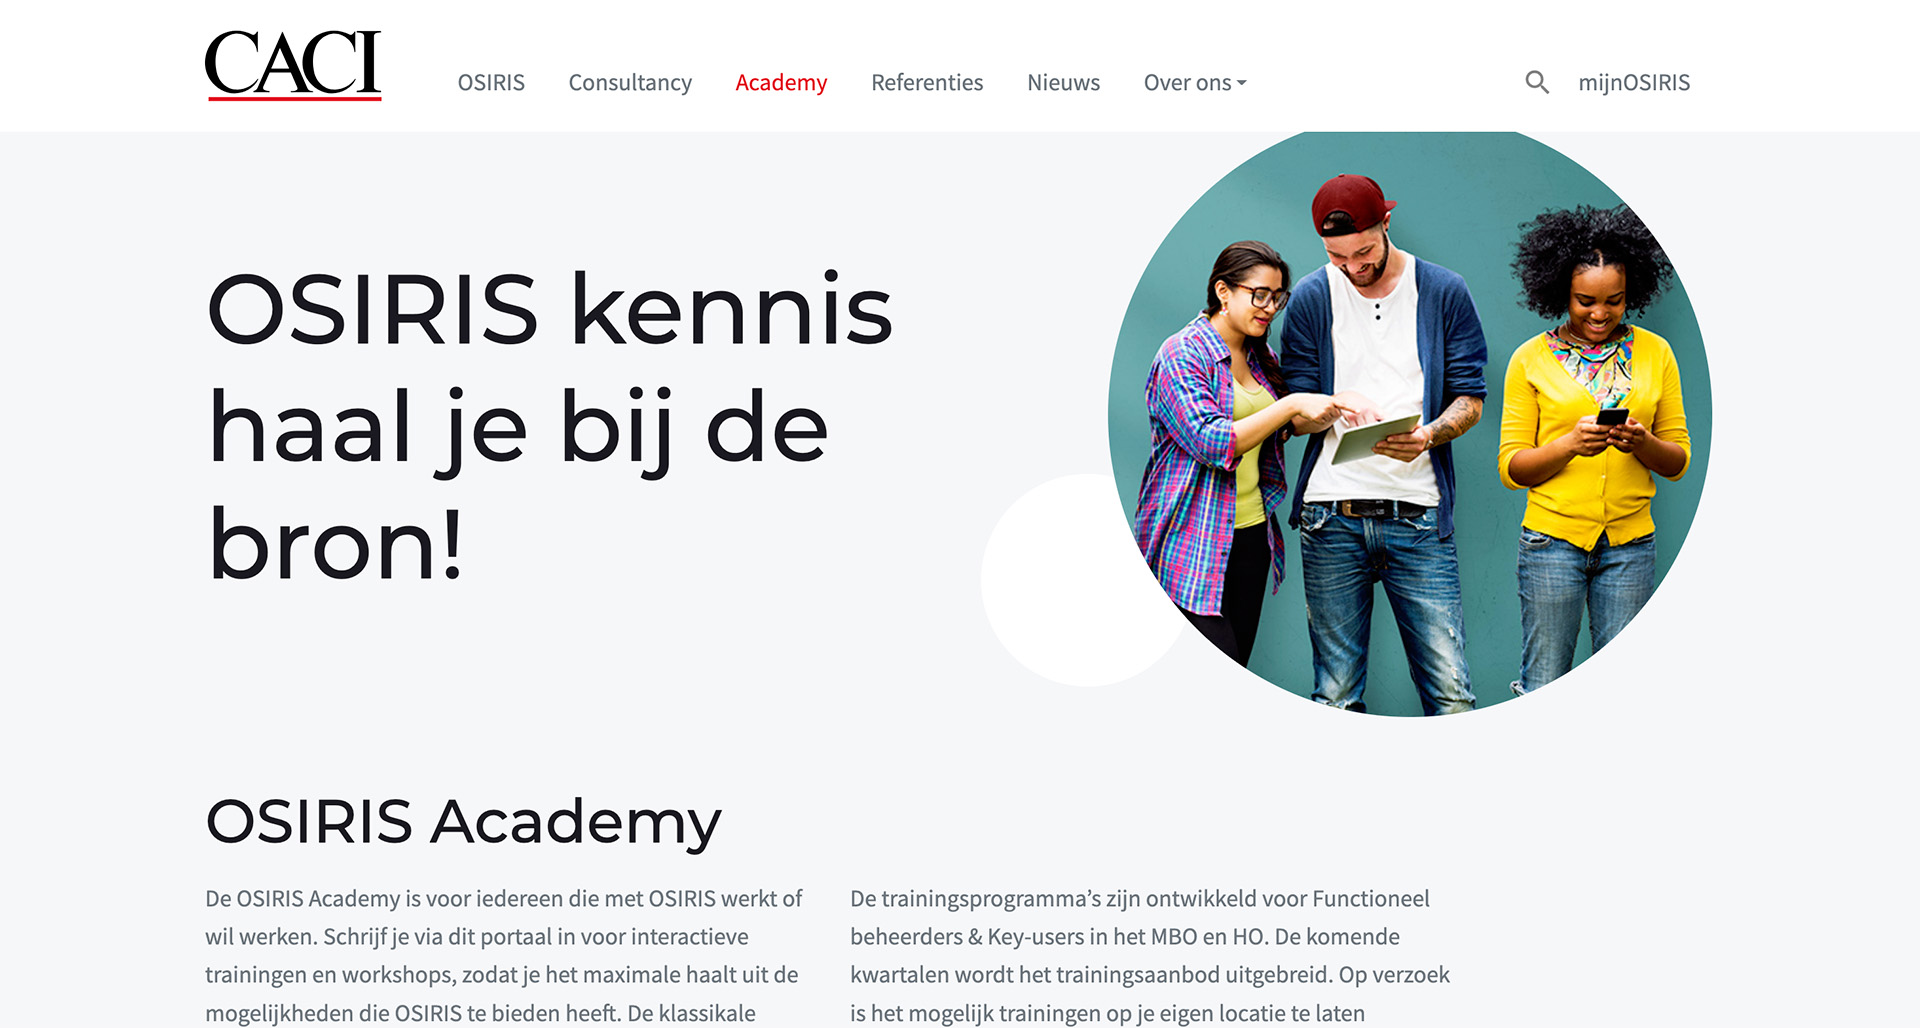 OSIRIS Academy: OSIRIS kennis haal je bij de bron!